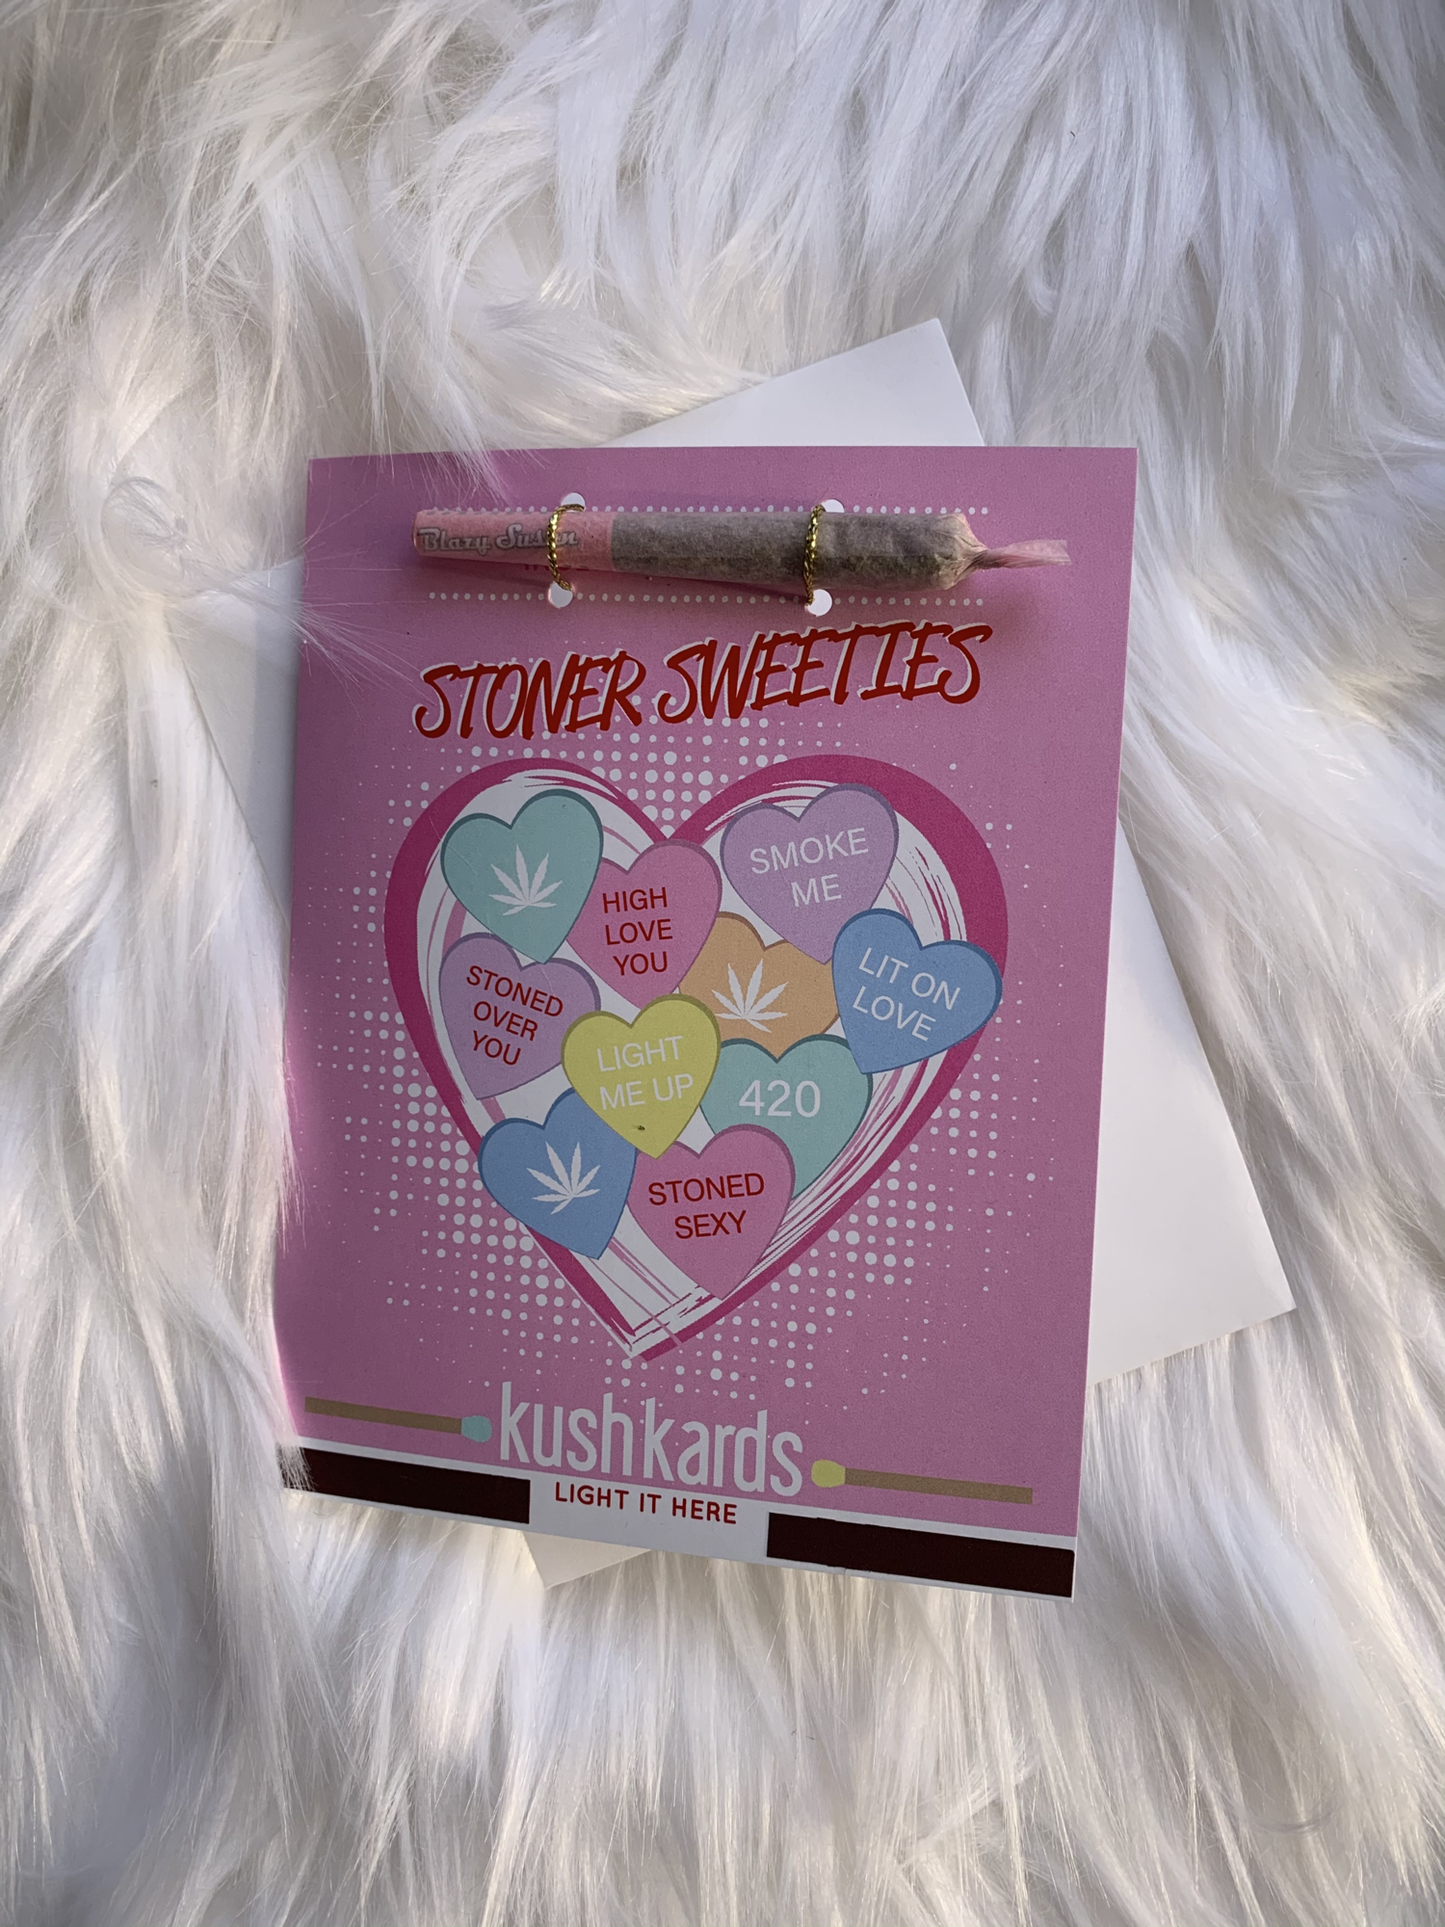 KushKards - Stoner Sweeties